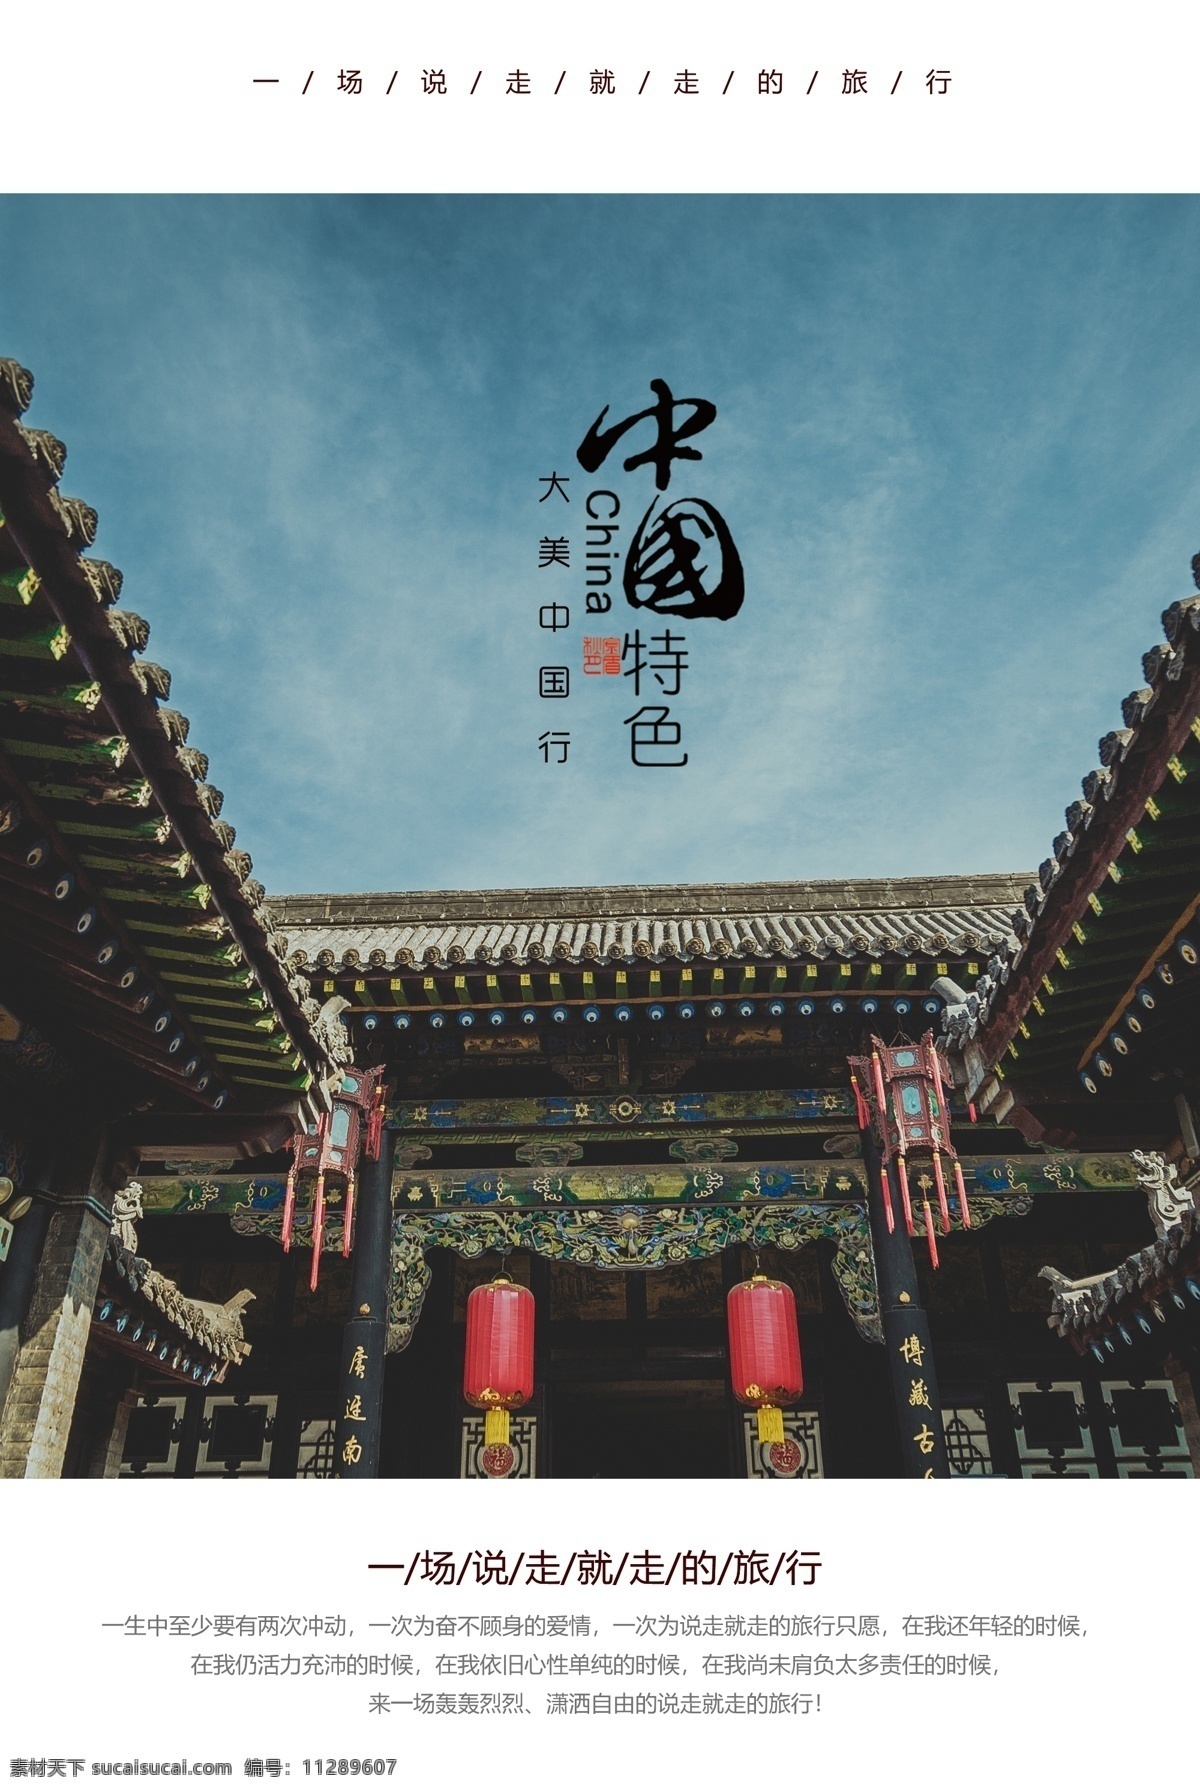 中国 风 旅游 宣传 活动 海报 素材图片 中国风 旅行